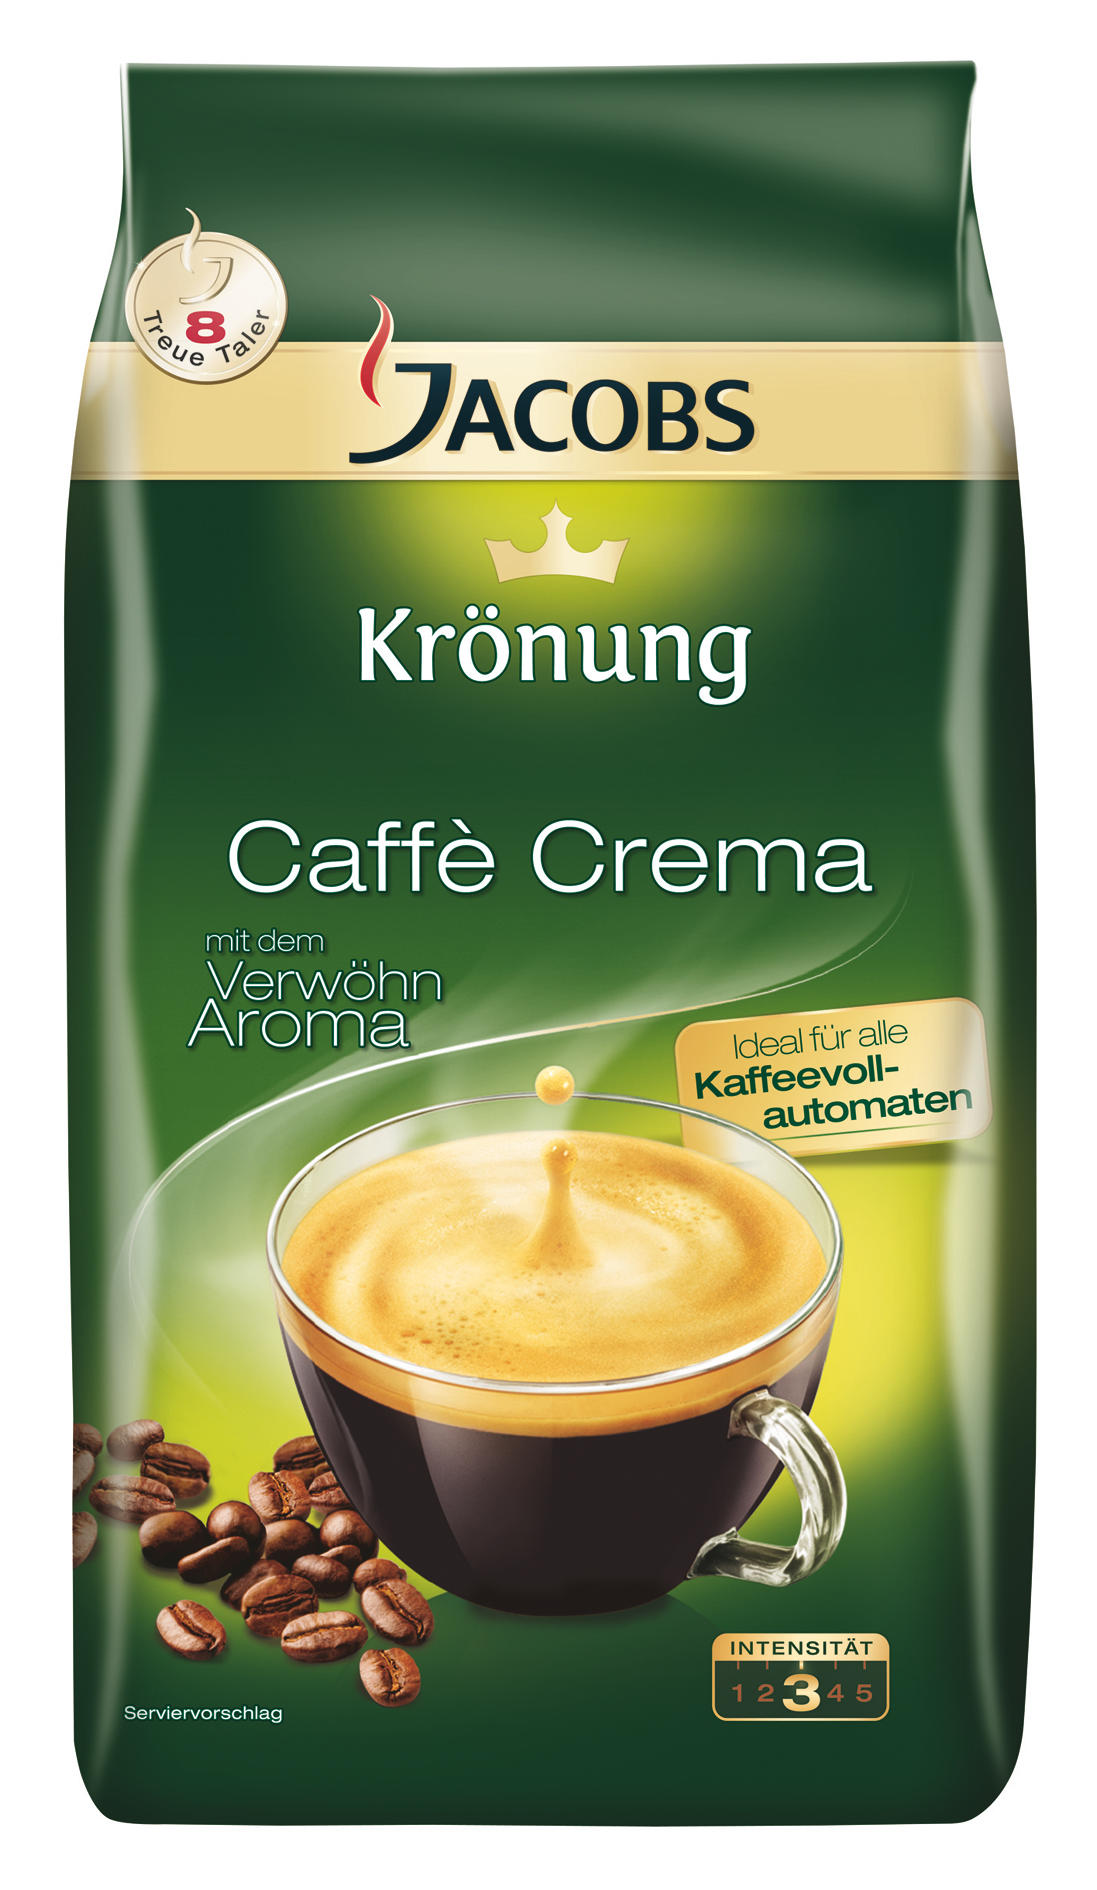 Crema Kaffeebohnen Caffe klassisch JACOBS Krönung